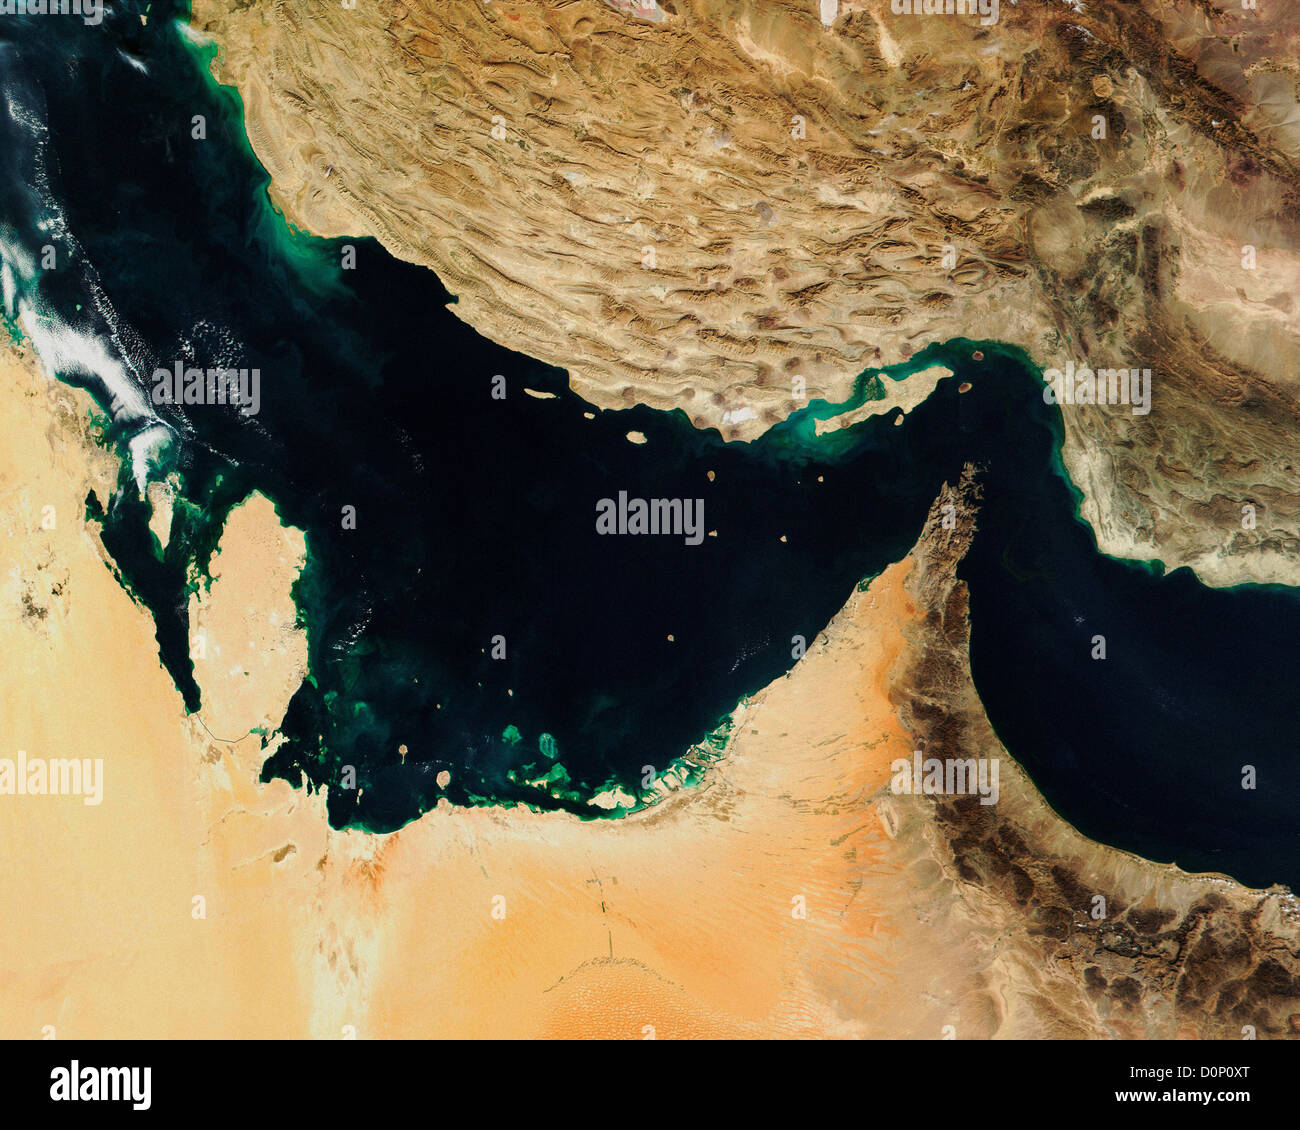 Les Plaques tectoniques entrent en collision dans le golfe Persique et le golfe d'Oman par MODIS Banque D'Images